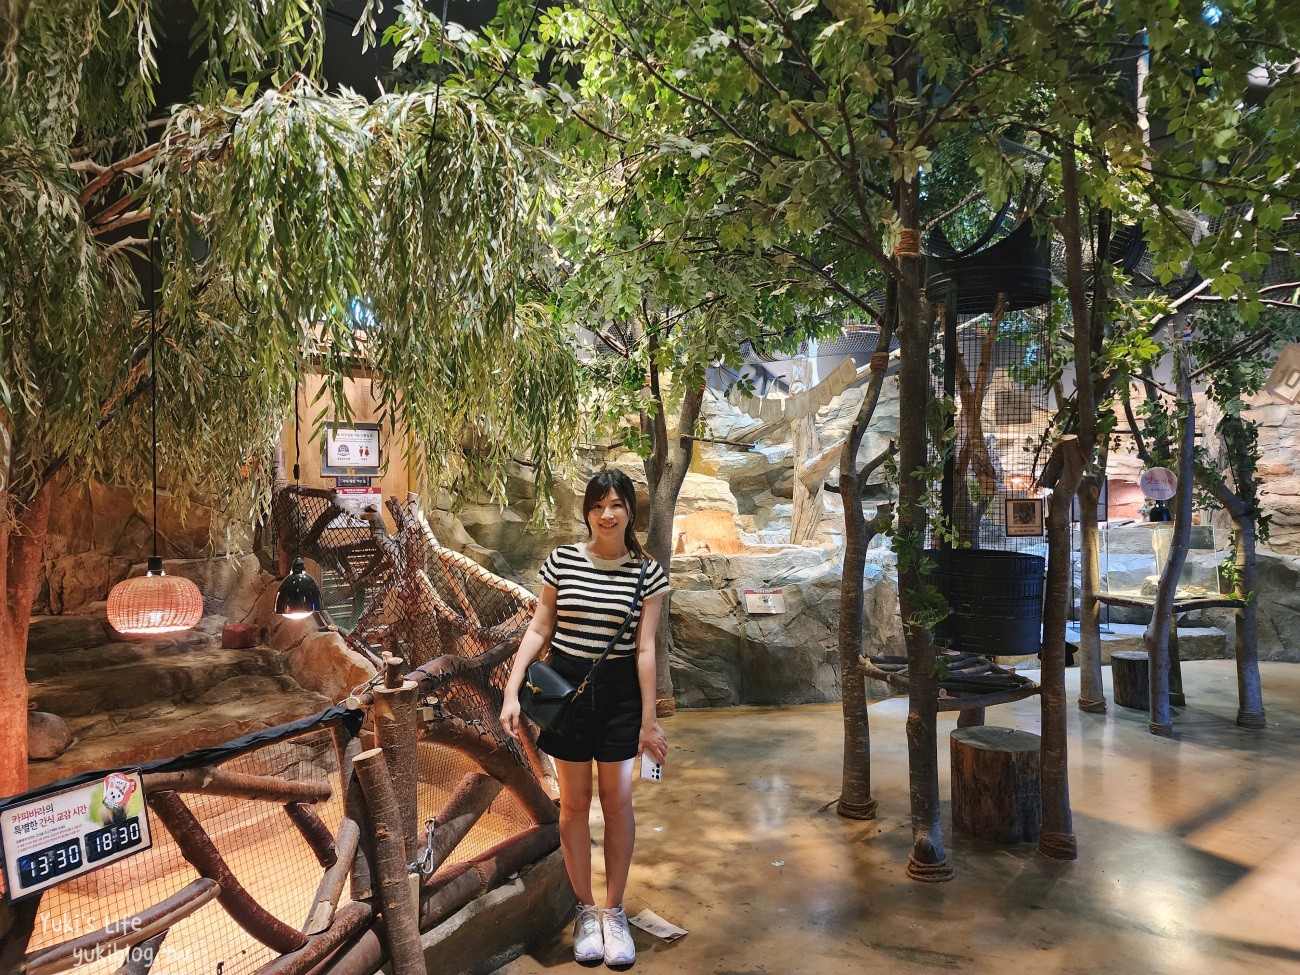 韓國親子景點》首爾Zoolung Zoolung室內動物主題樂園，可以近距離餵食小動物，療癒到不行 - yukiblog.tw